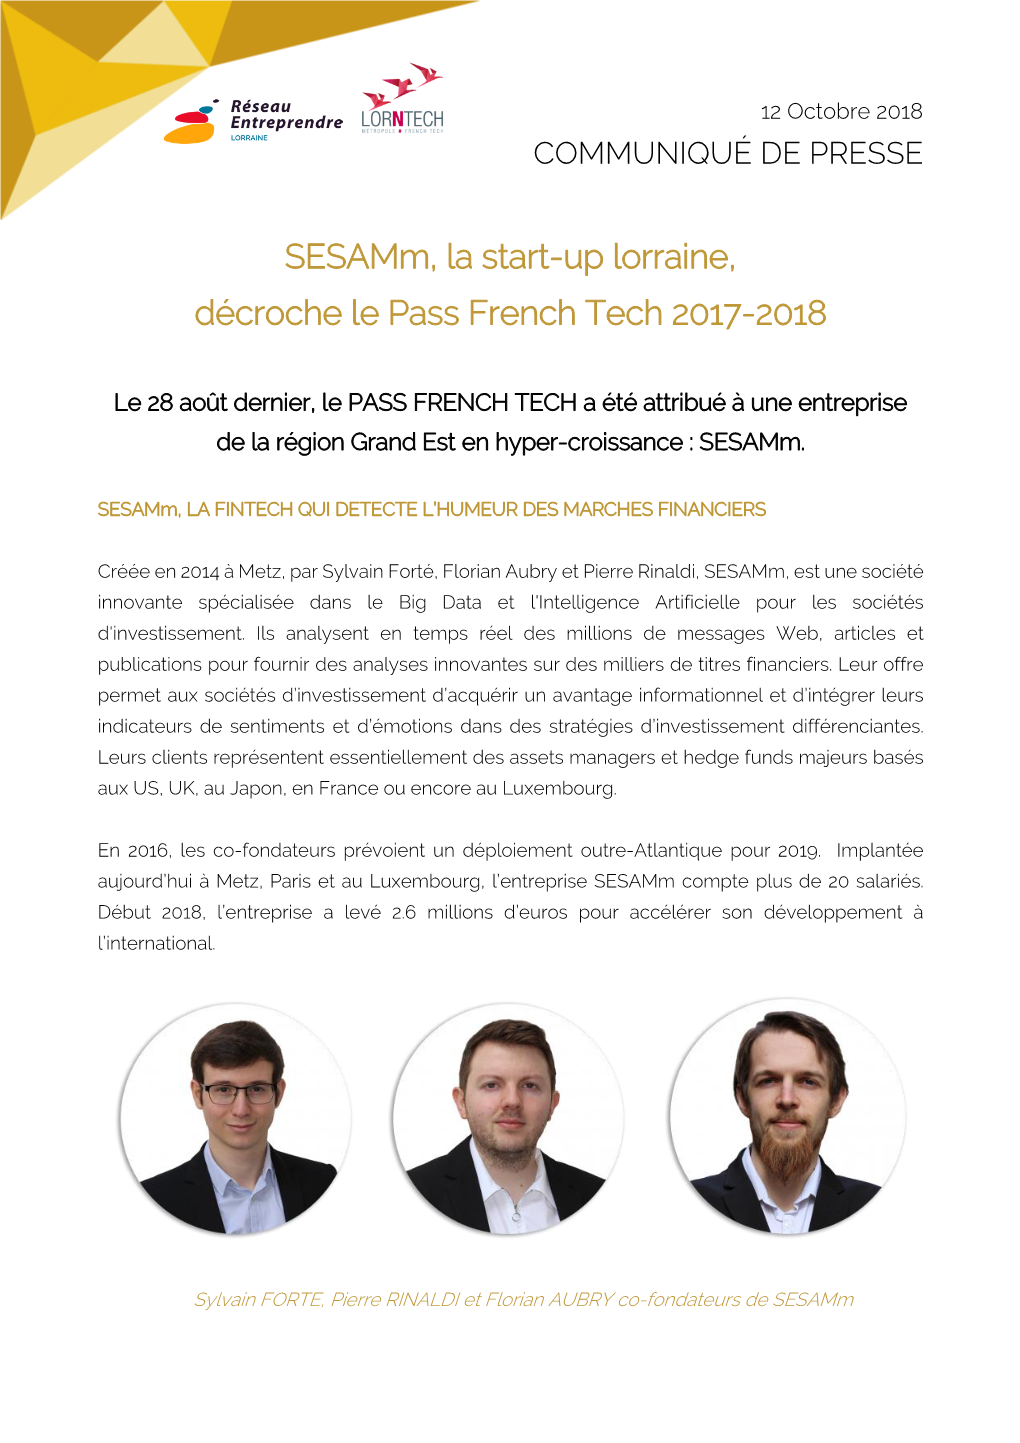 Sesamm, La Start-Up Lorraine, Décroche Le Pass French Tech 2017-2018